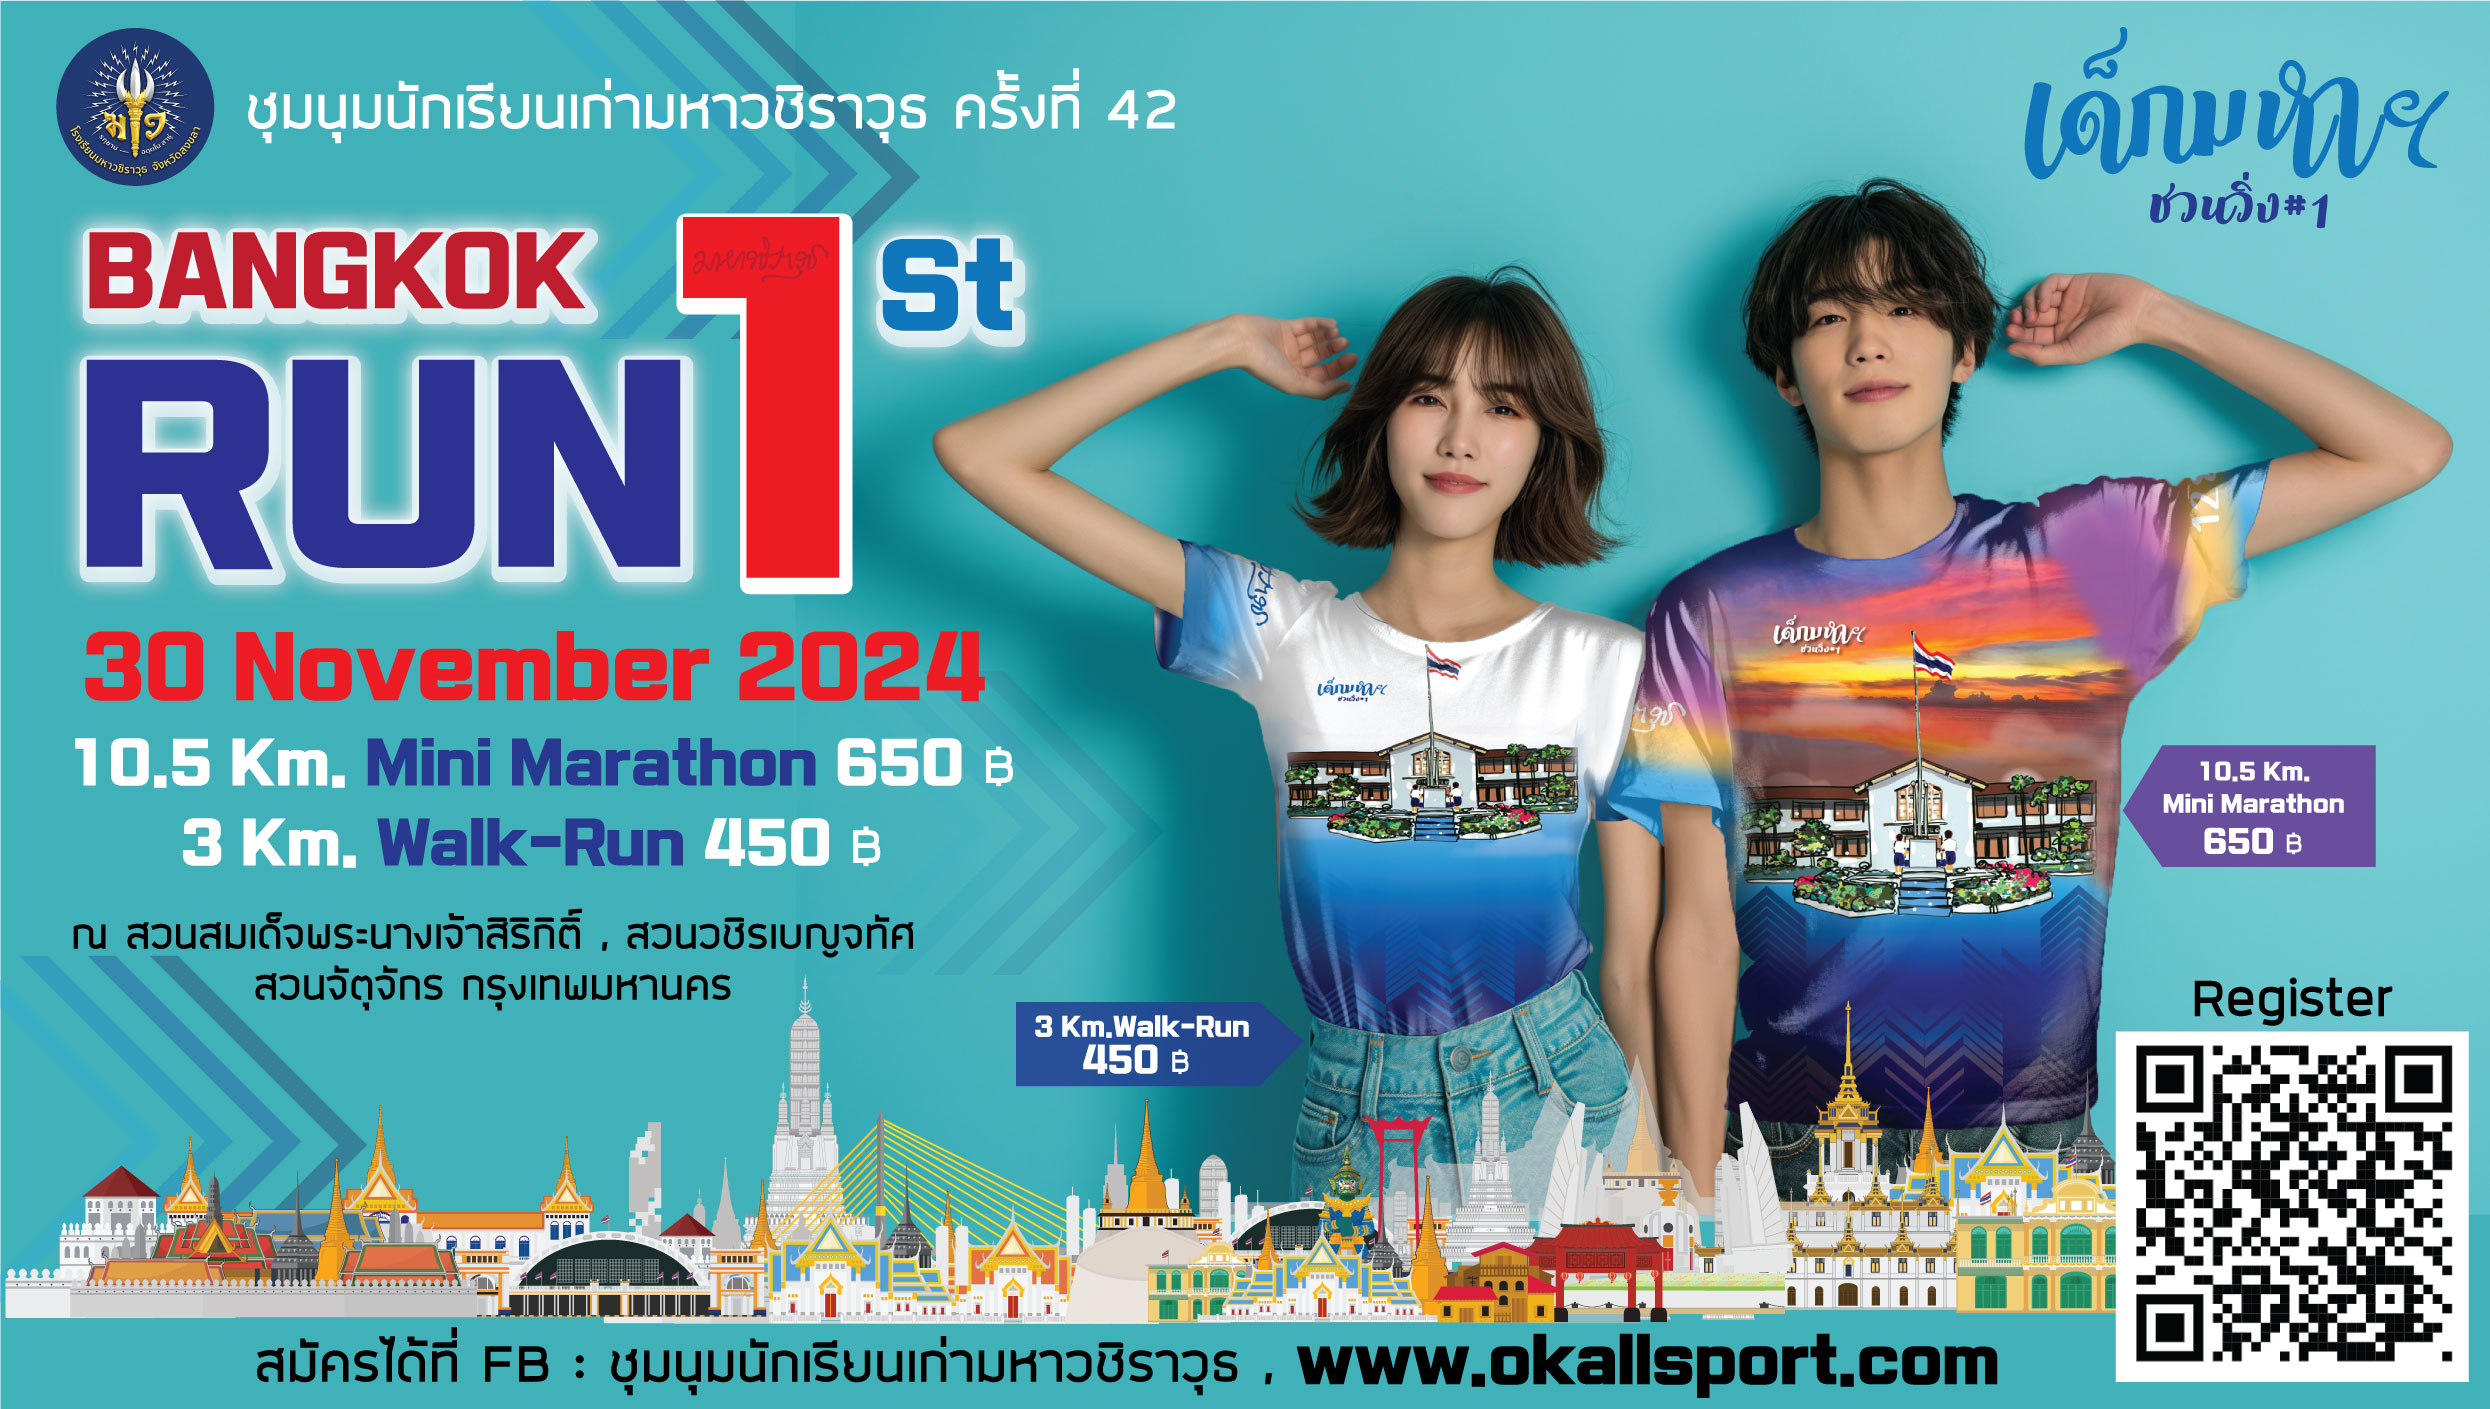 บางกอกรัน ครั้งที่ 1 ชื่อภาอังกฤษ Bangkok Run 1St